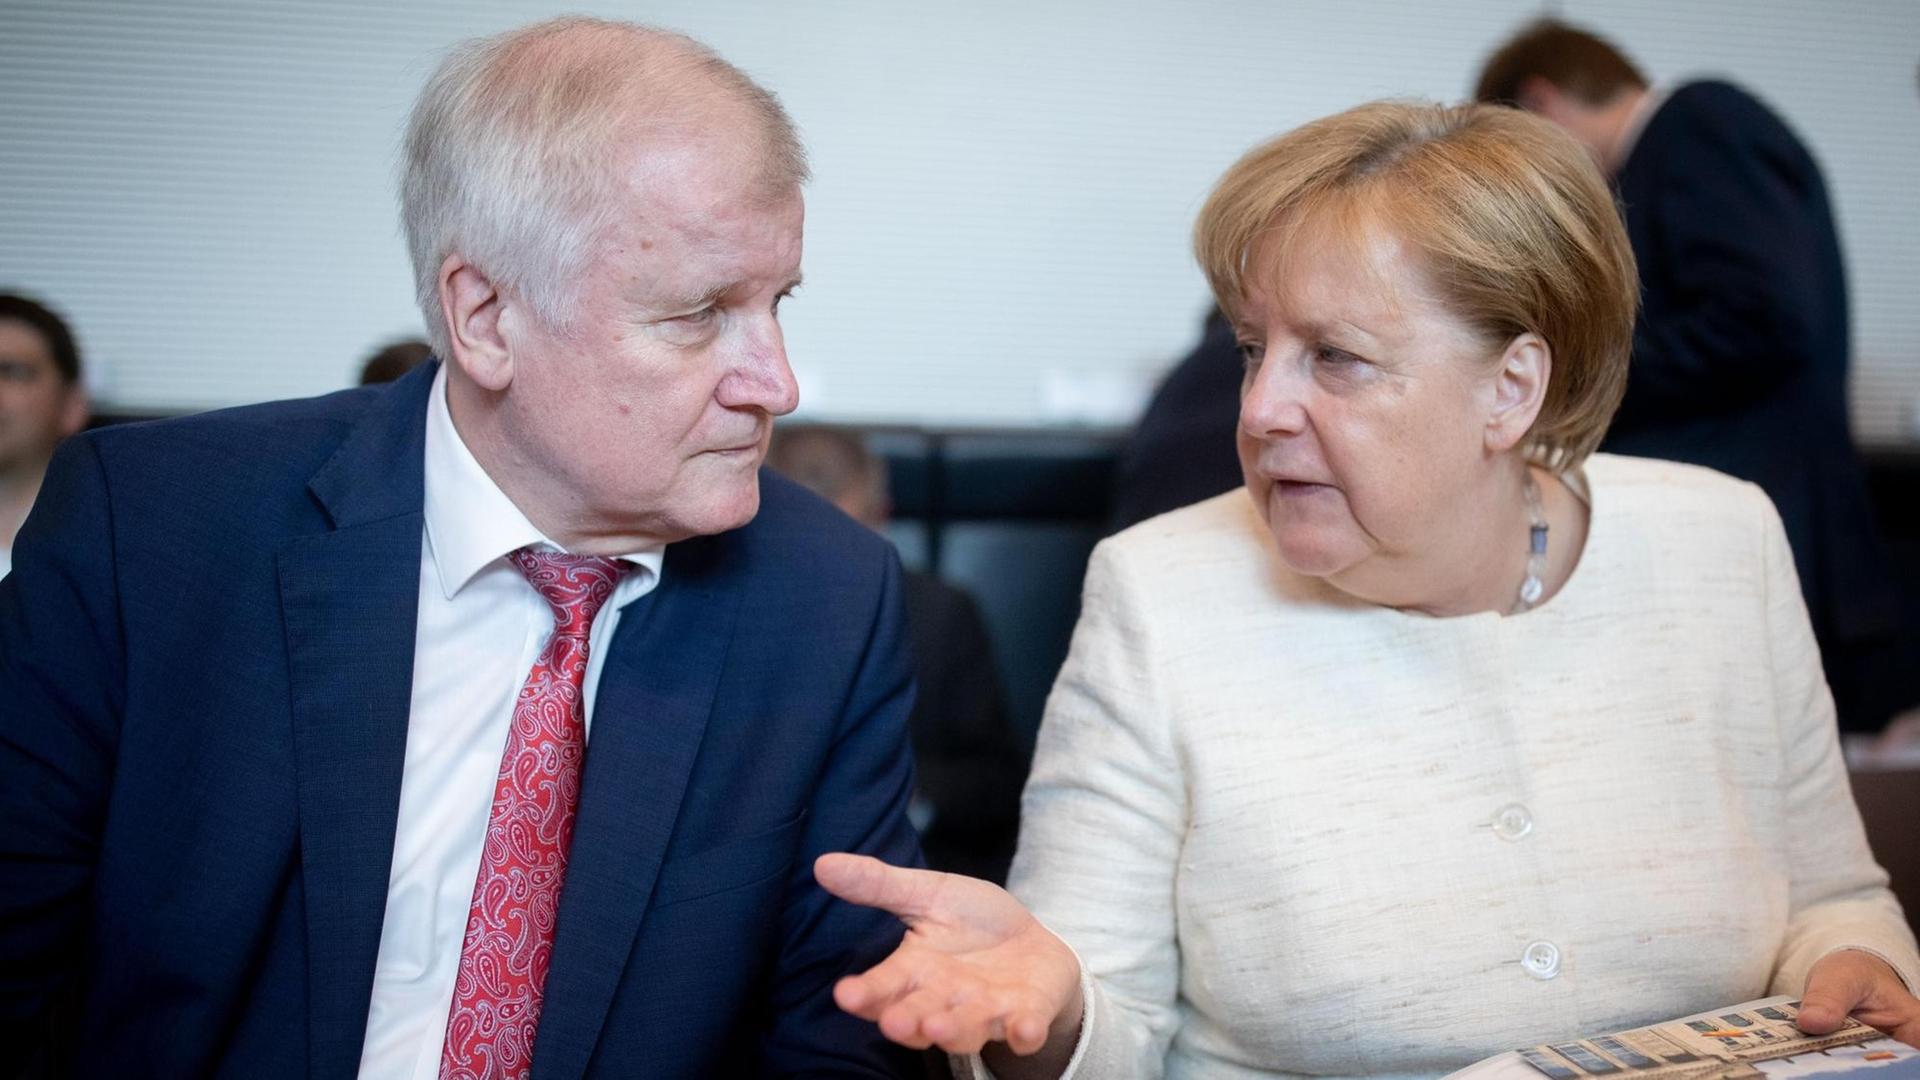 12.06.2018, Berlin: Bundeskanzlerin Angela Merkel (CDU) und Horst Seehofer (CSU), Bundesminister für Inneres, Heimat und Bau unterhalten sich Beginn der CDU/CSU-Fraktionssitzung im Bundestag.